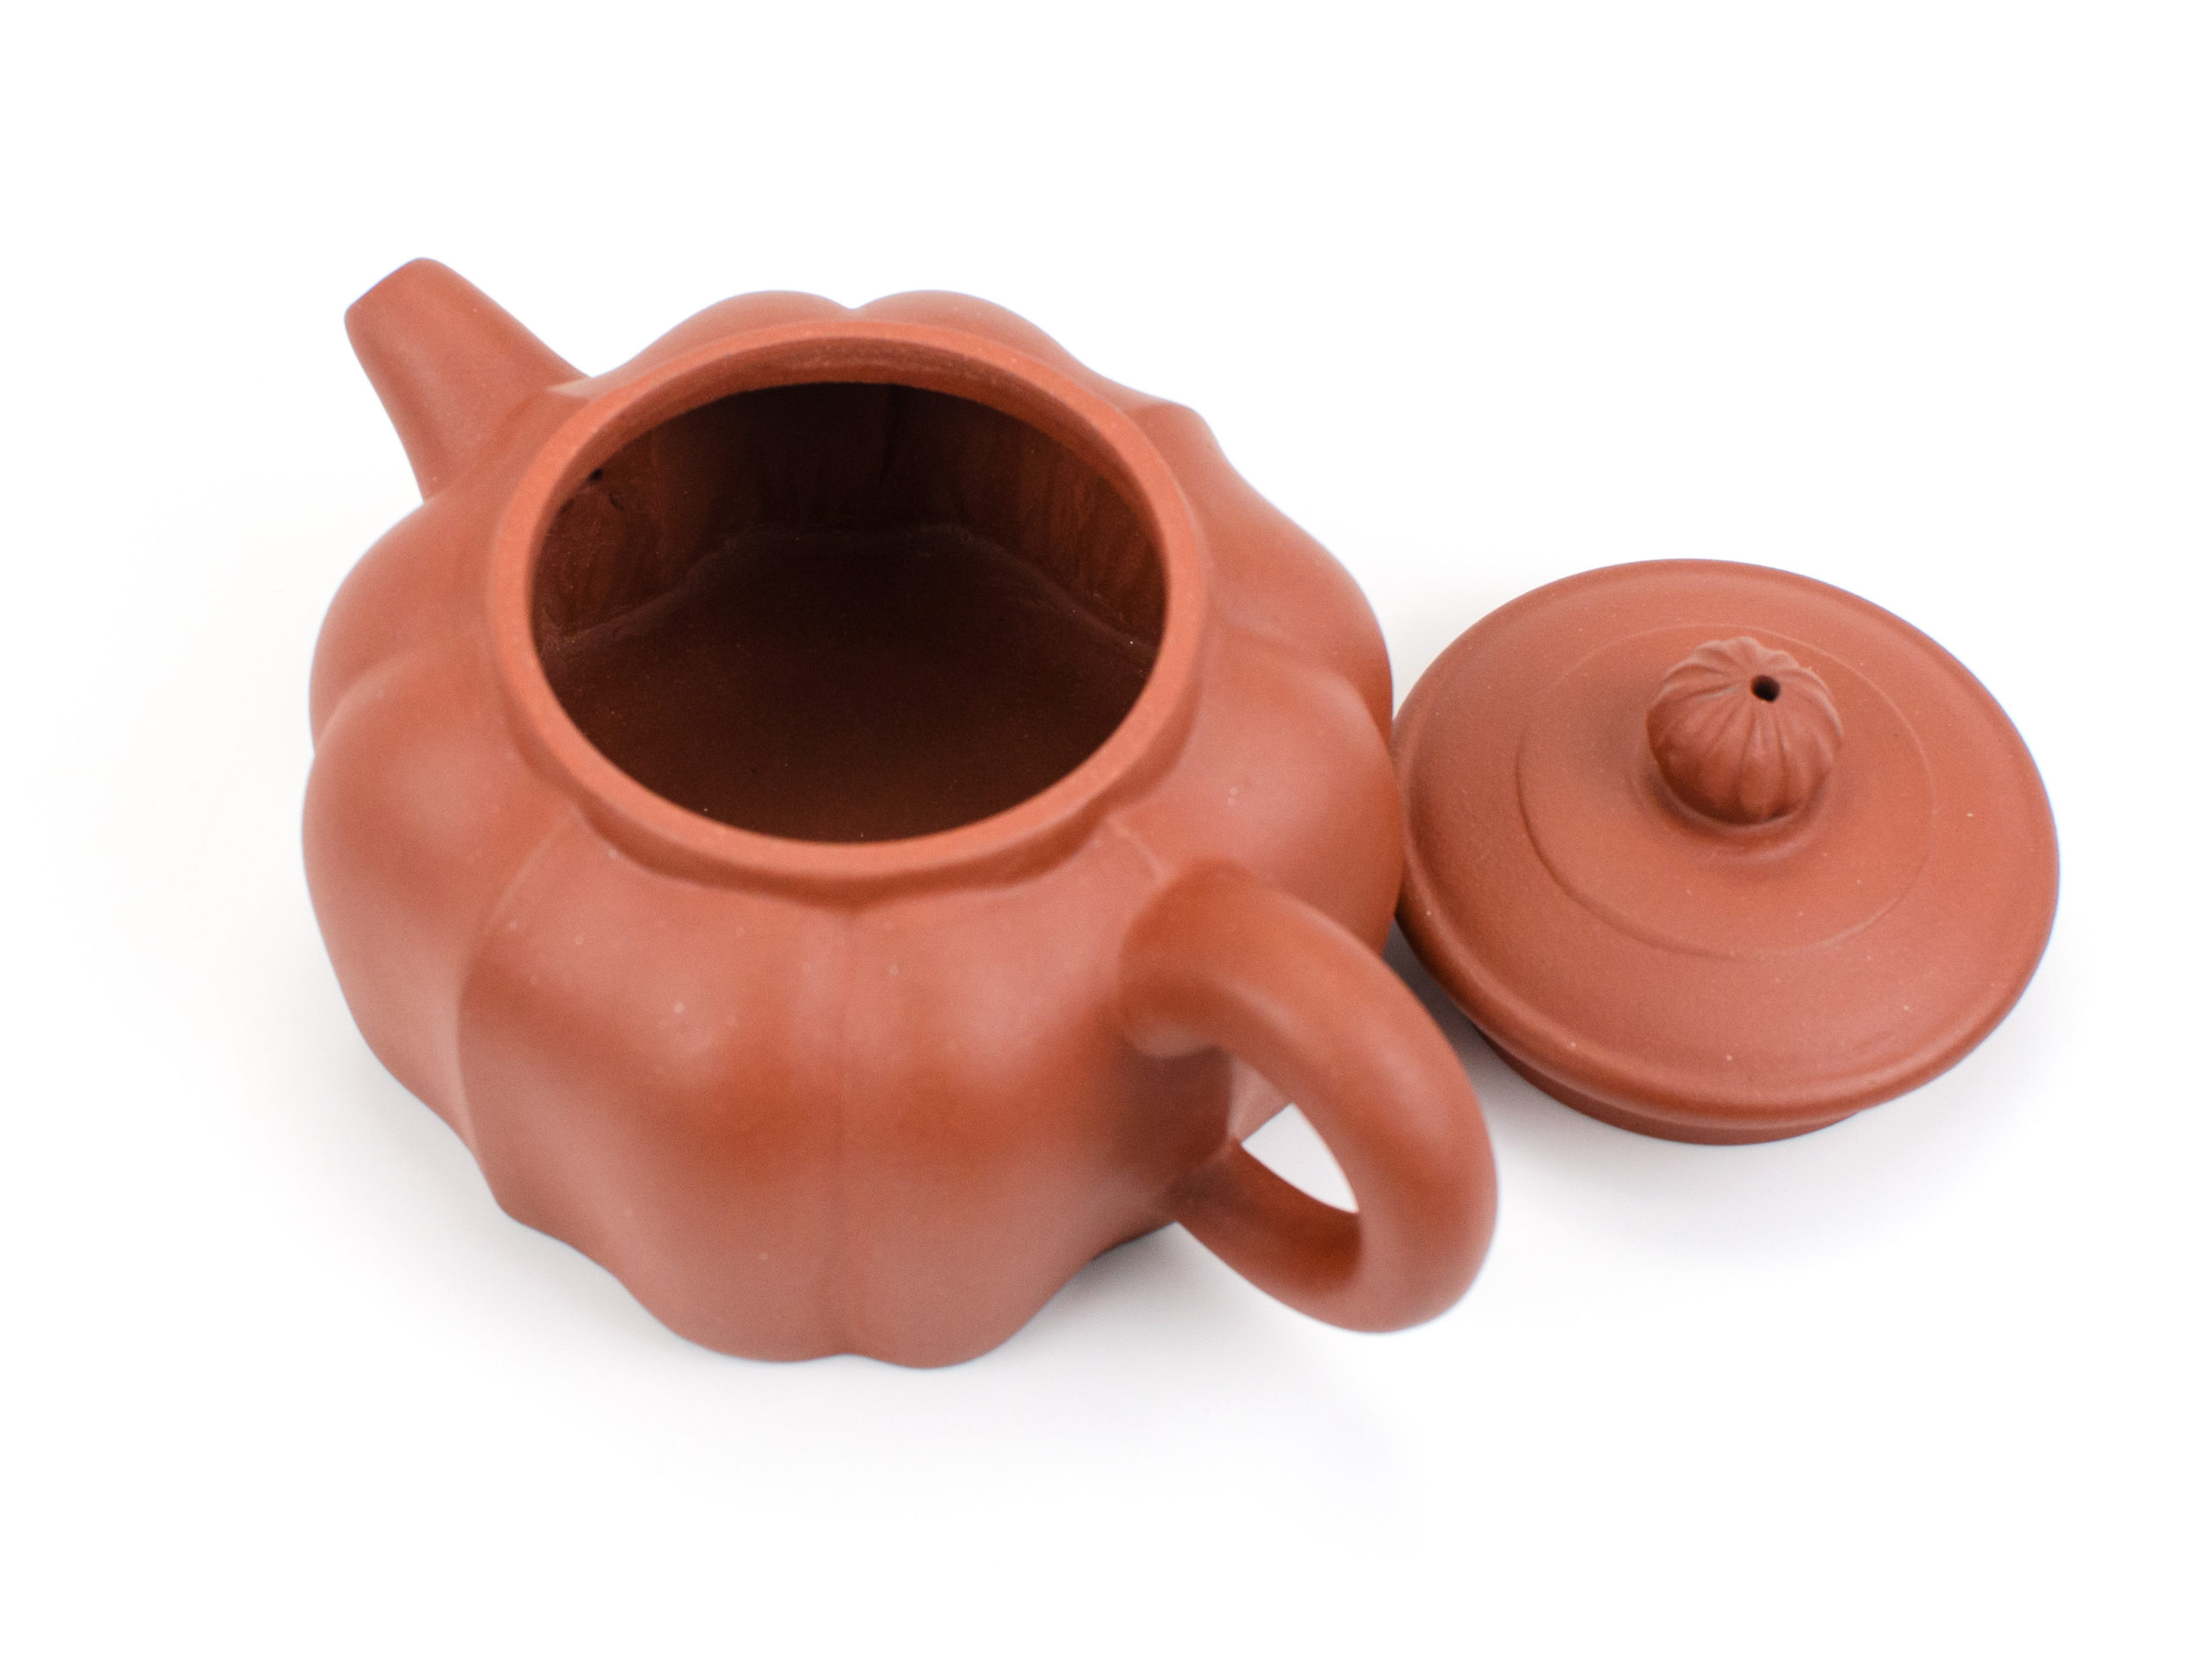 Long Spout Yixing Teapot